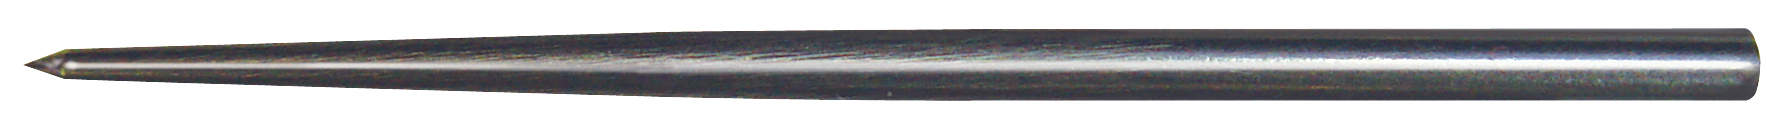 GRS Stahlspitzen lang/dünn Ø 3,3 mm gehärtet, Inhalt 6 Stück